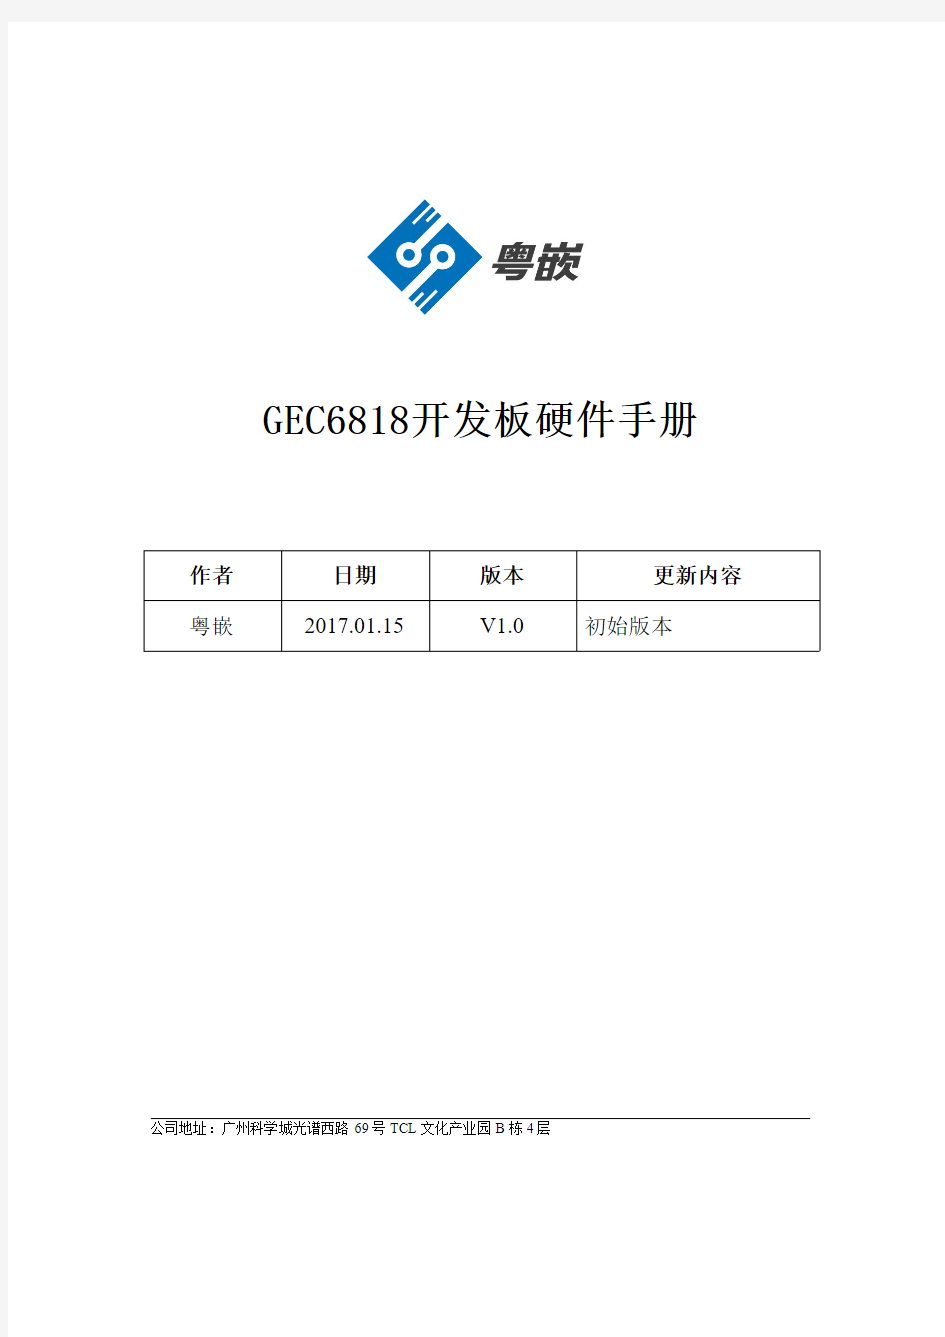 驱动课程资料GEC6818开发板-硬件手册V1.1-201706